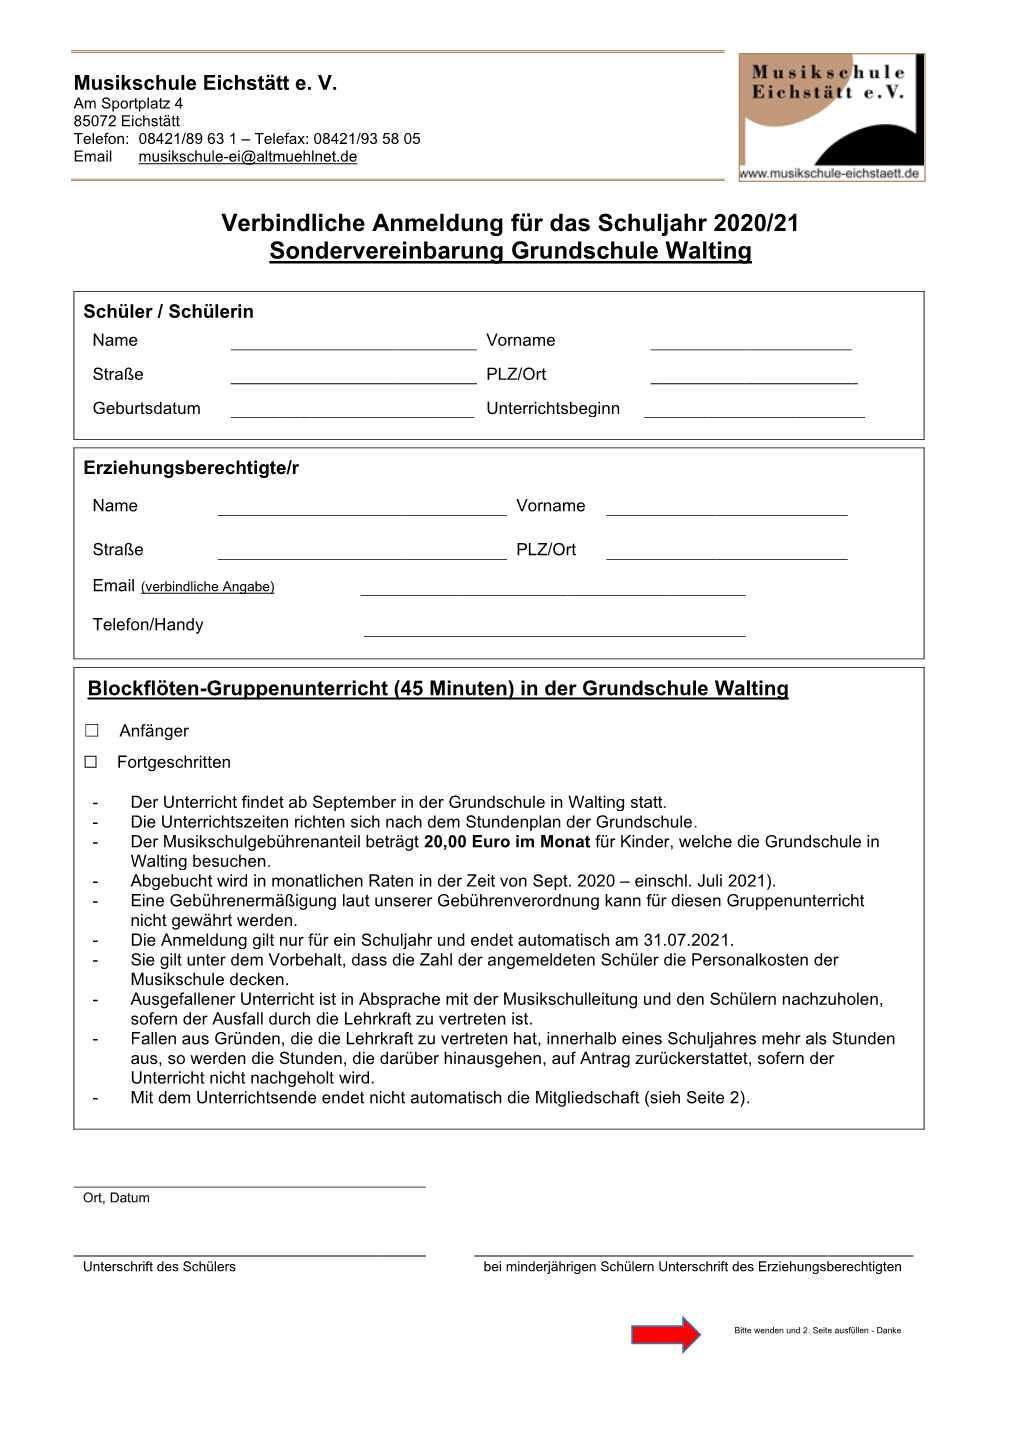 Verbindliche Anmeldung Für Das Schuljahr 2020/21 Sondervereinbarung Grundschule Walting